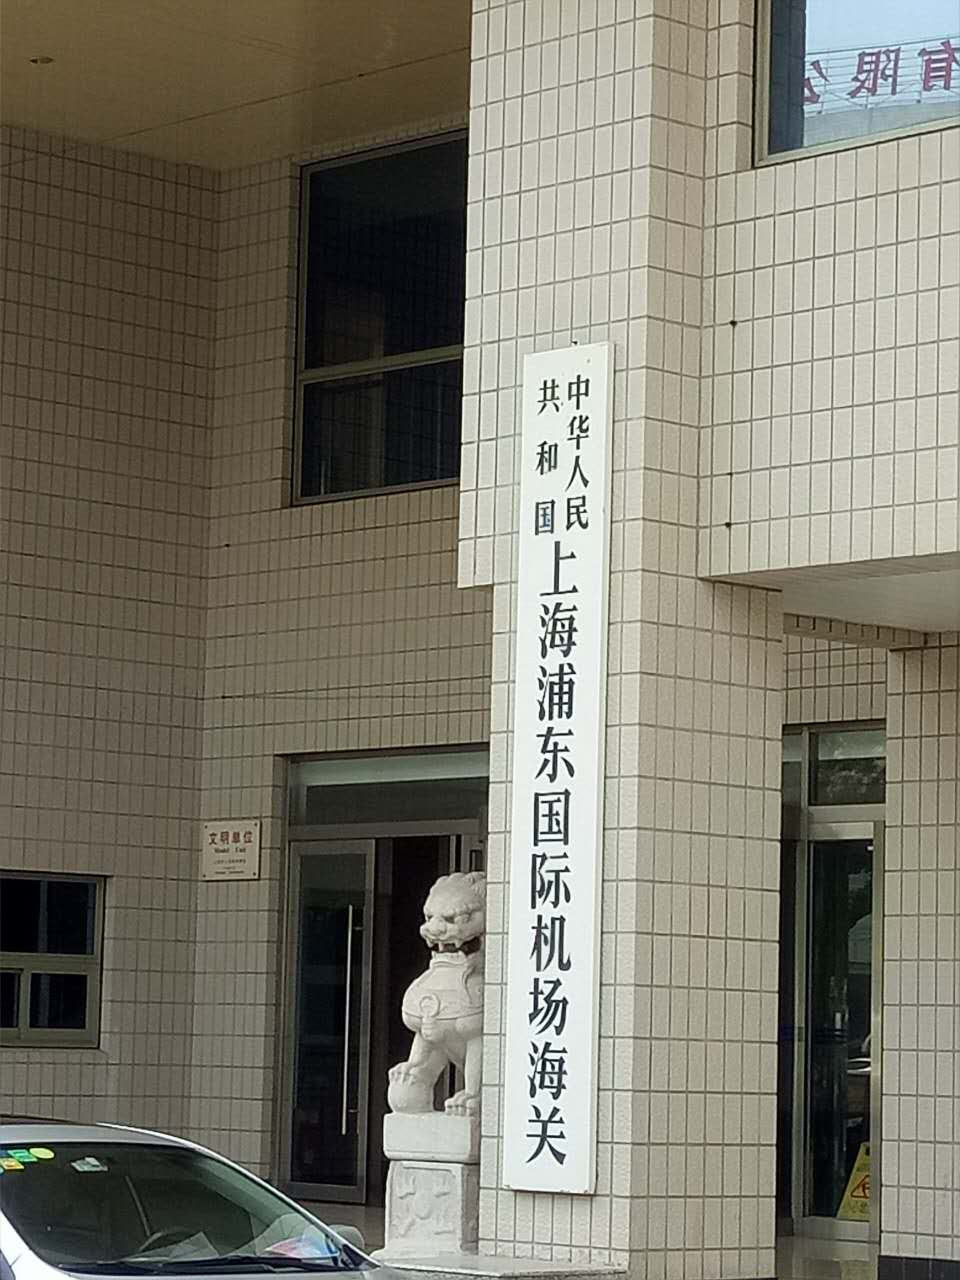 张严锋律师接受委托办理上海浦东机场工作人员走私香烟团伙案